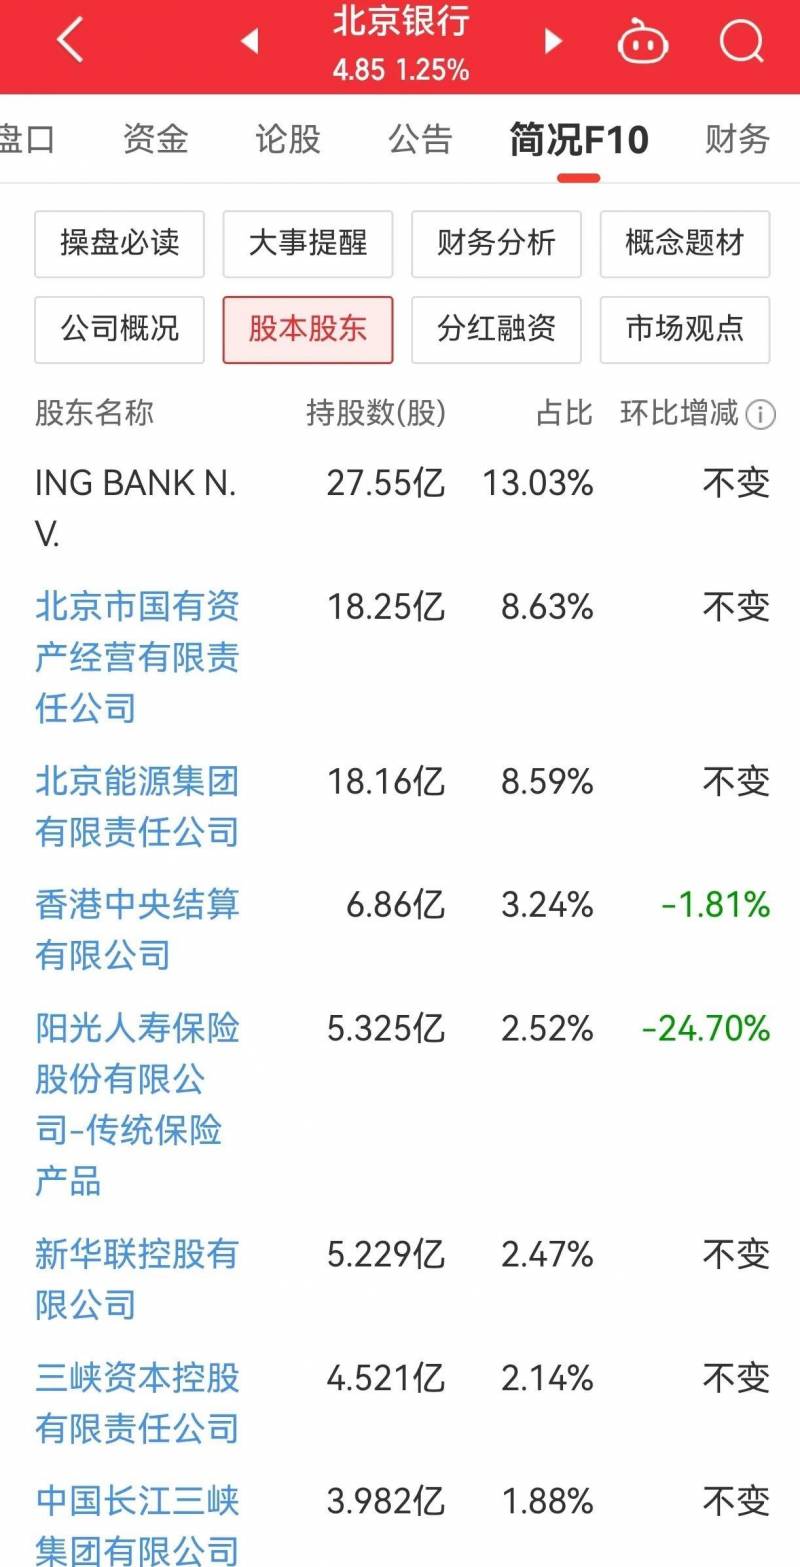 北京银行属于城市商业银行类别